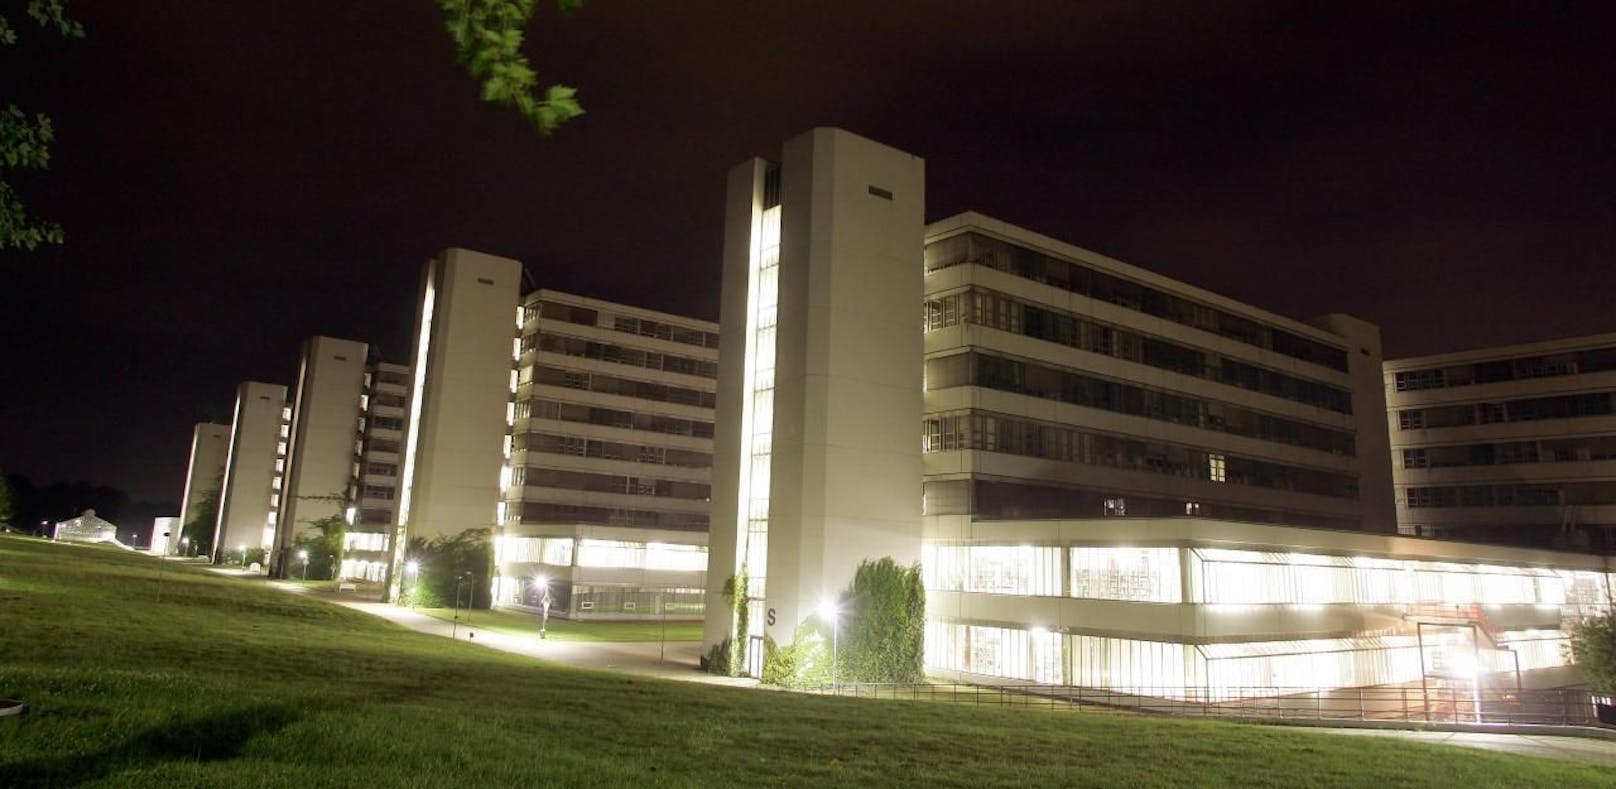 Die Frau wurde auf dem Gelände der Universität Bielefeld vergewaltigt